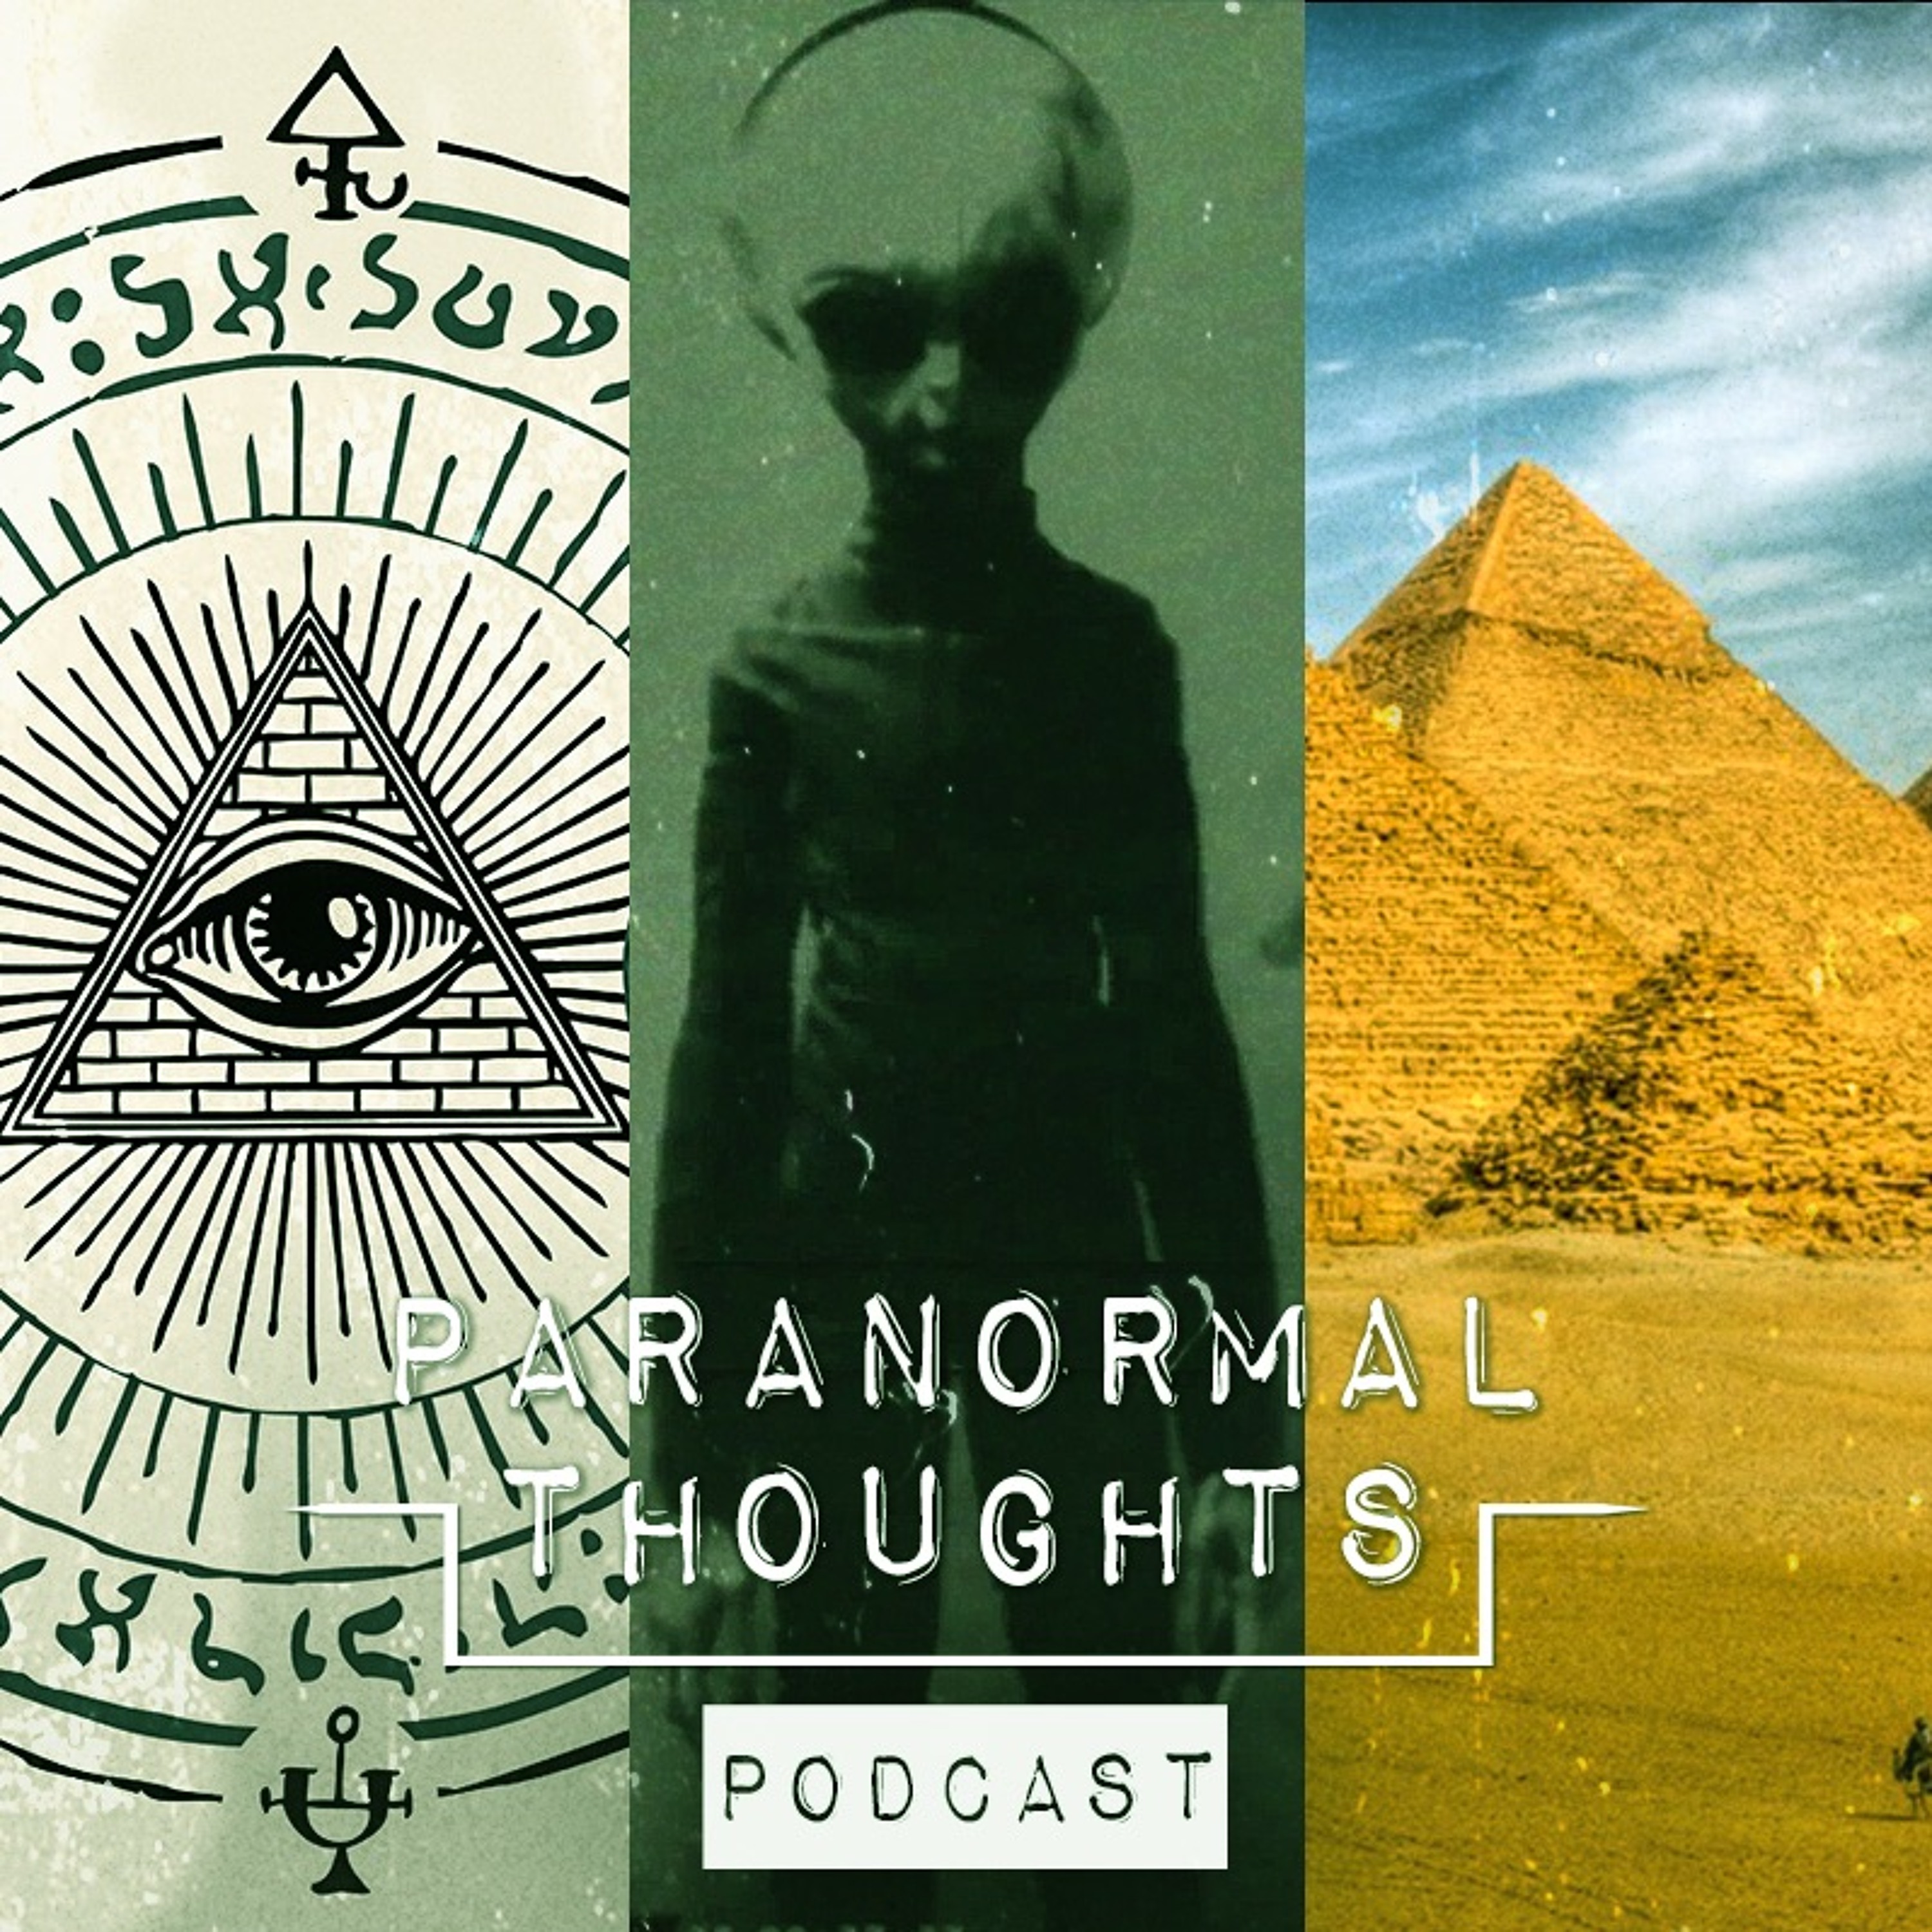 Ancient Aliens - Parallel Universes - Reincarnation - Q&A Podcast Part 1